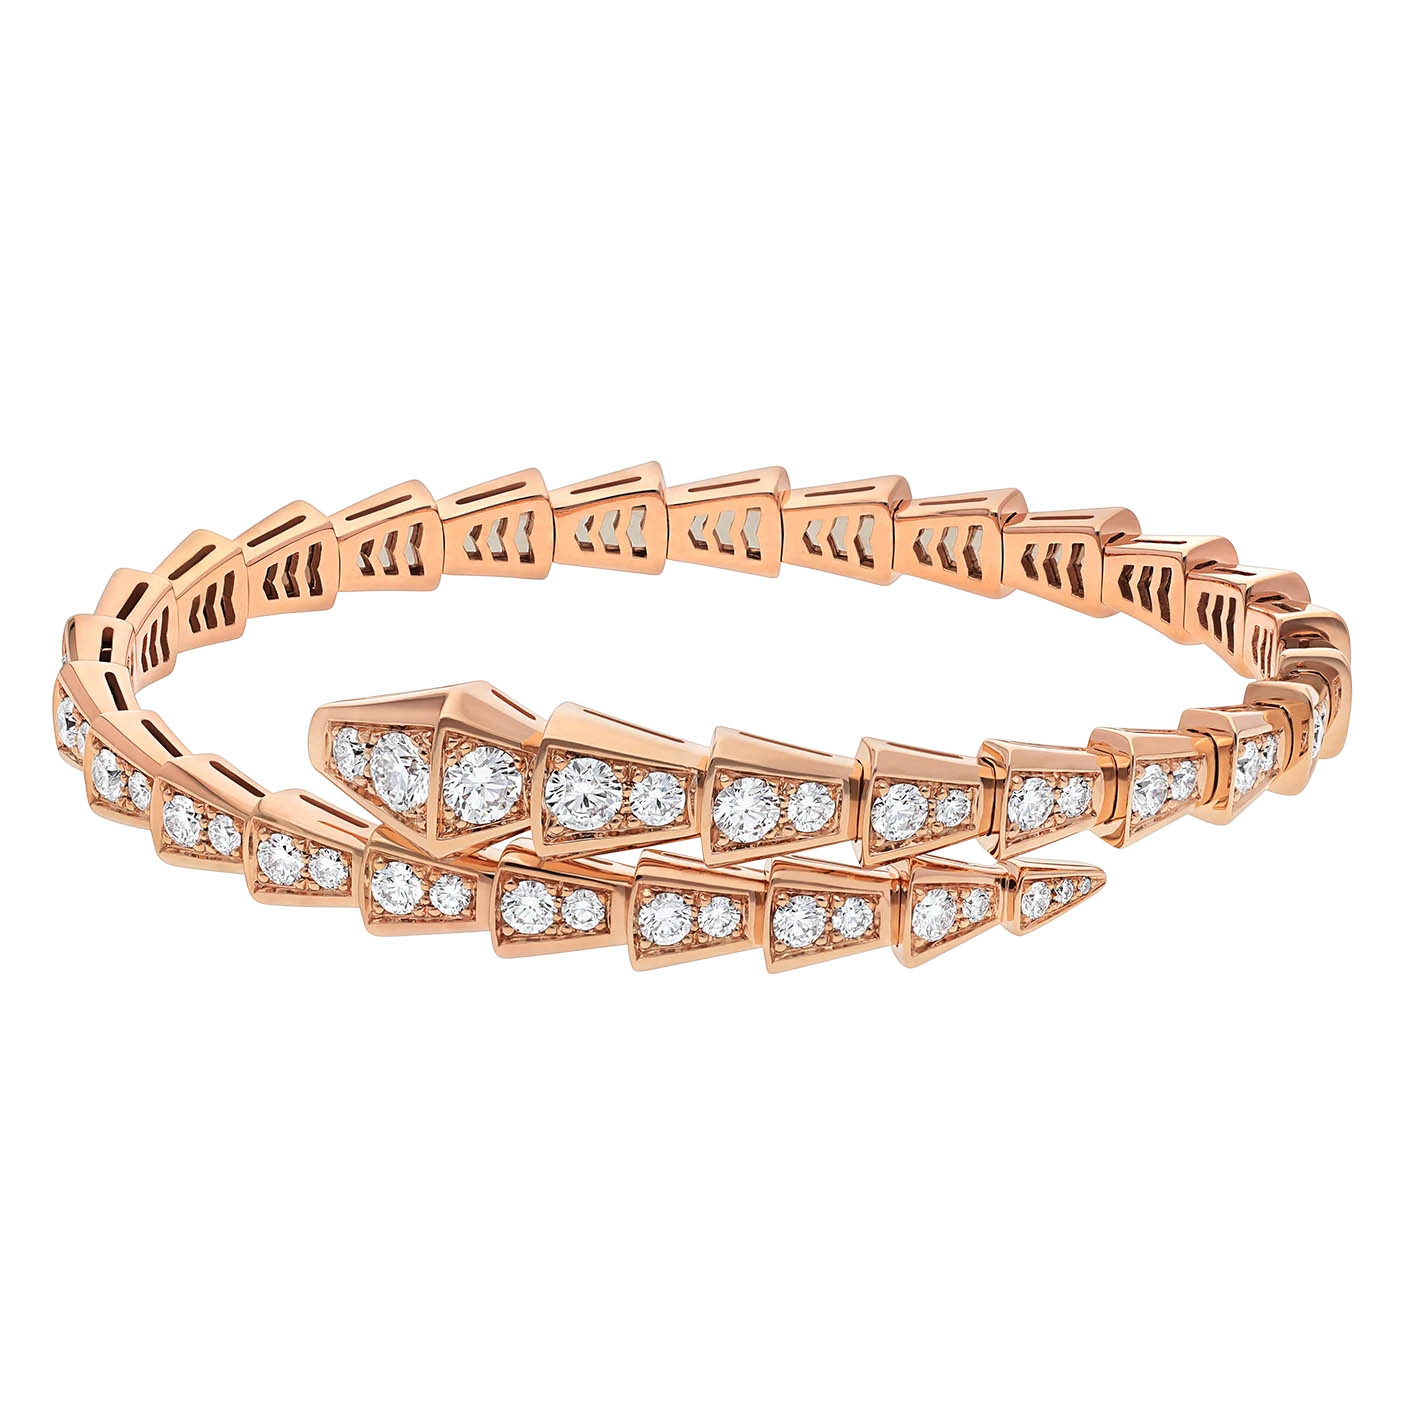 Bracelet fin à une bobine de bijoux OEM/ODM, conception personnalisée, en or rose 18 carats et pavé complet de diamants, service de bijoux OEM, vente en gros